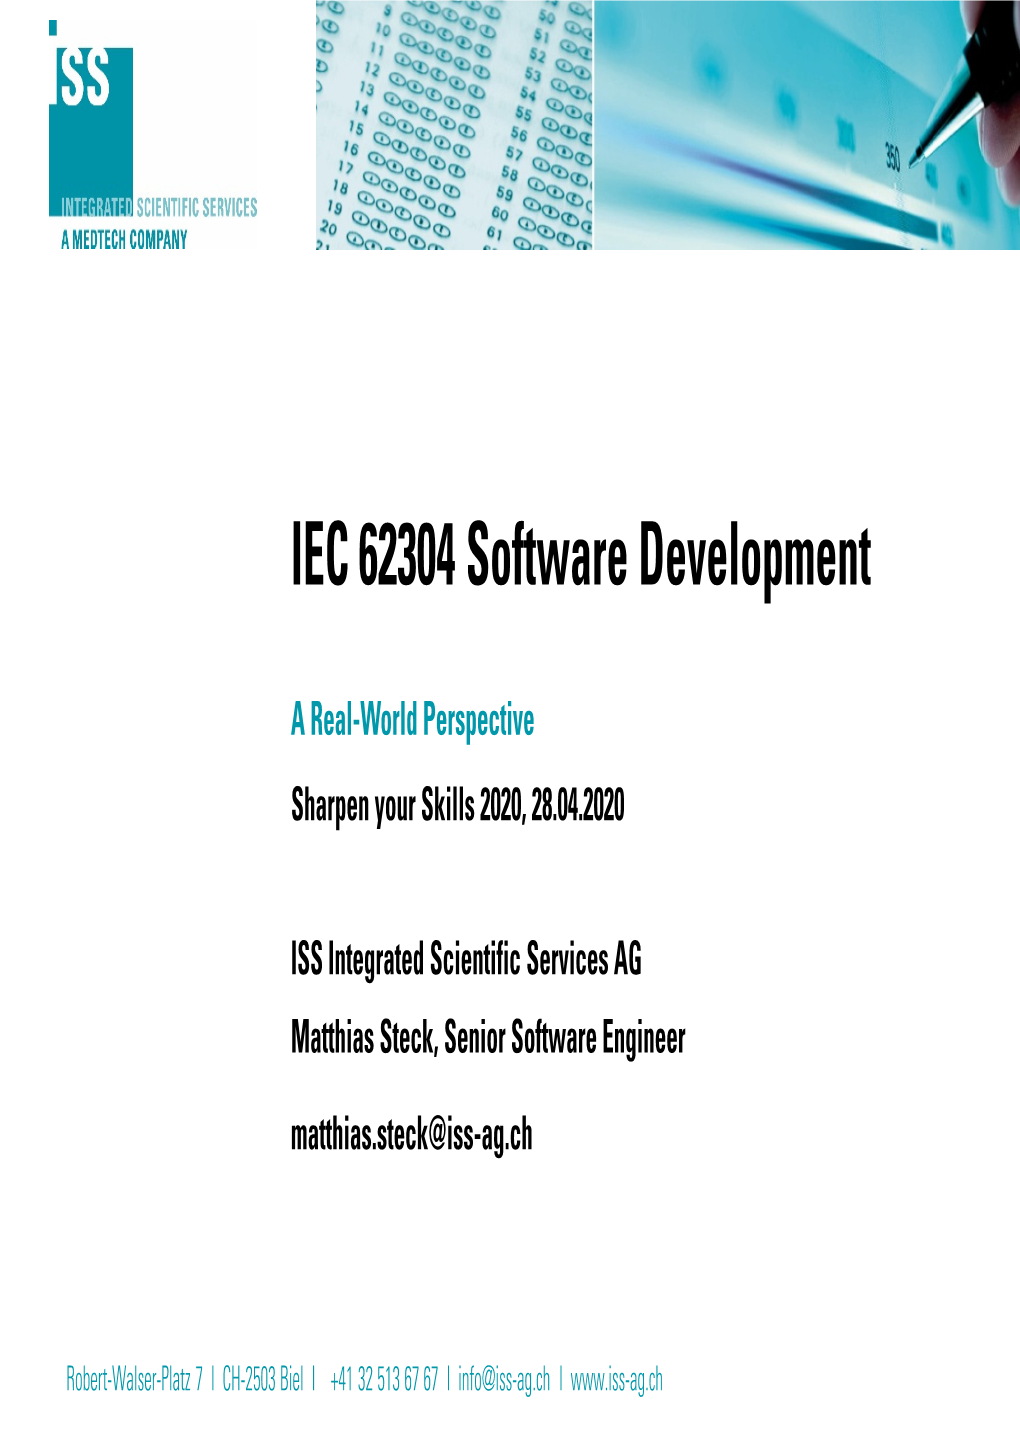 20200427 Software Development According to IEC 62304 V3